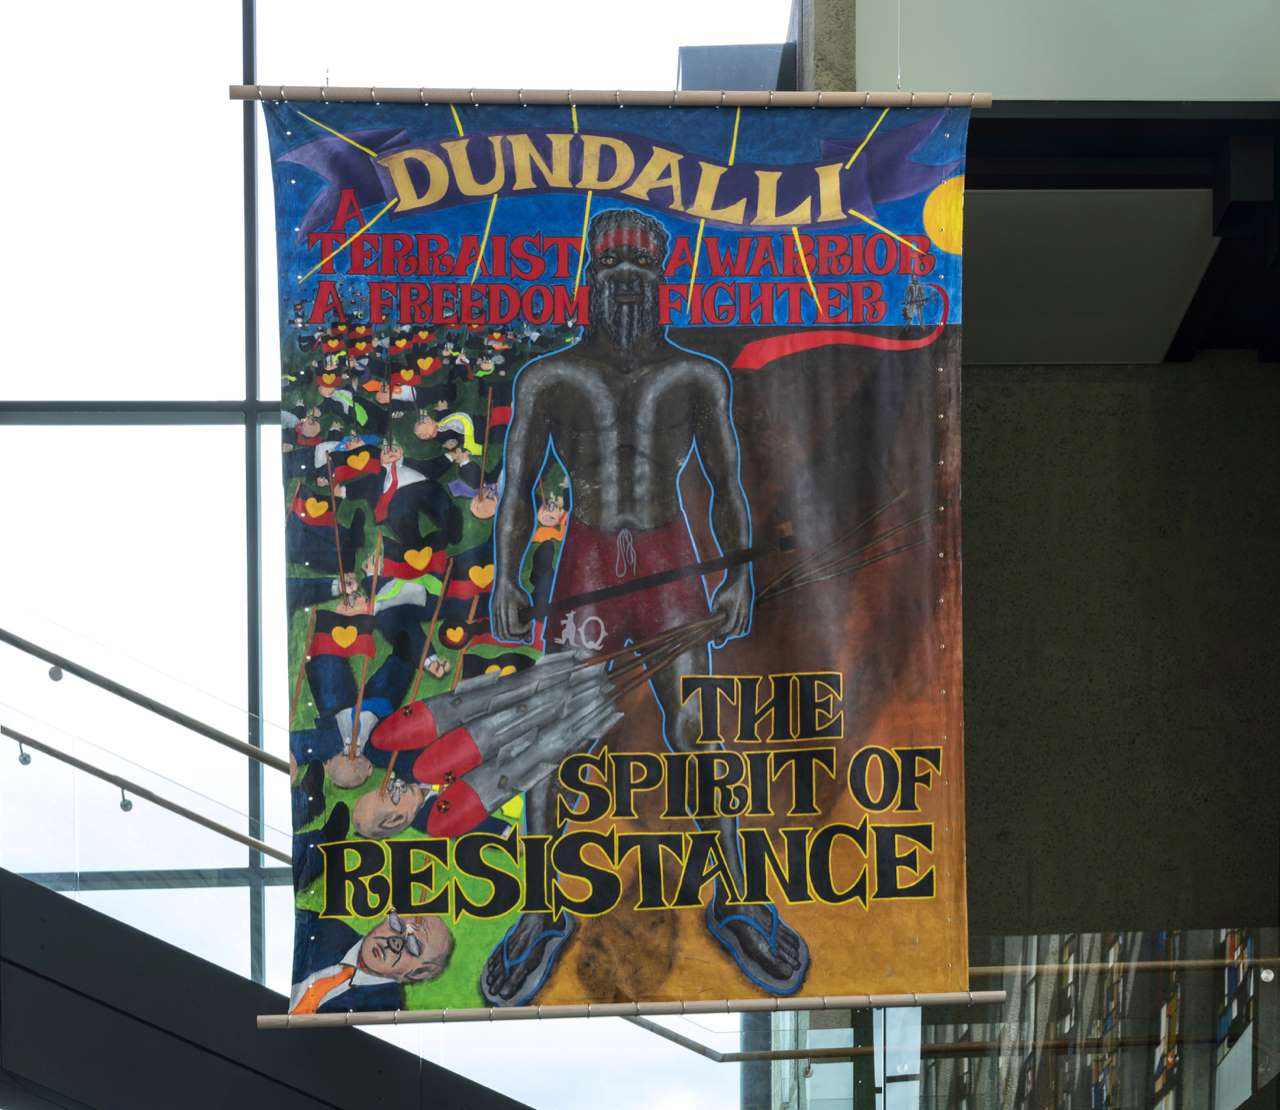 Image of Gordon Hookey's artwork "Dundalli"